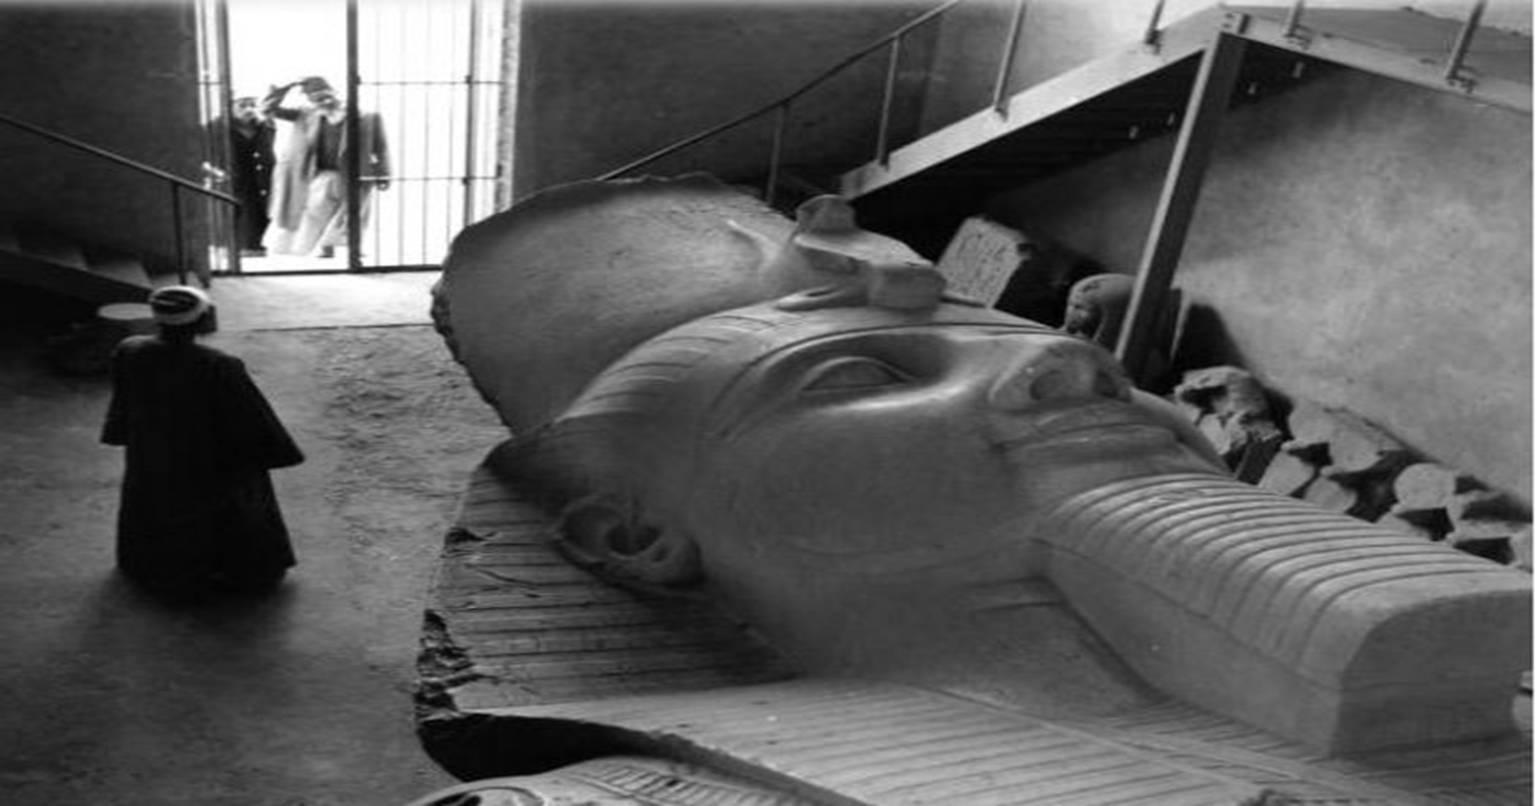 दफन मिली मिस्र की एक प्राचीन मूर्ति, जानिए क्या राज साथ लेकर आई है बाहर?